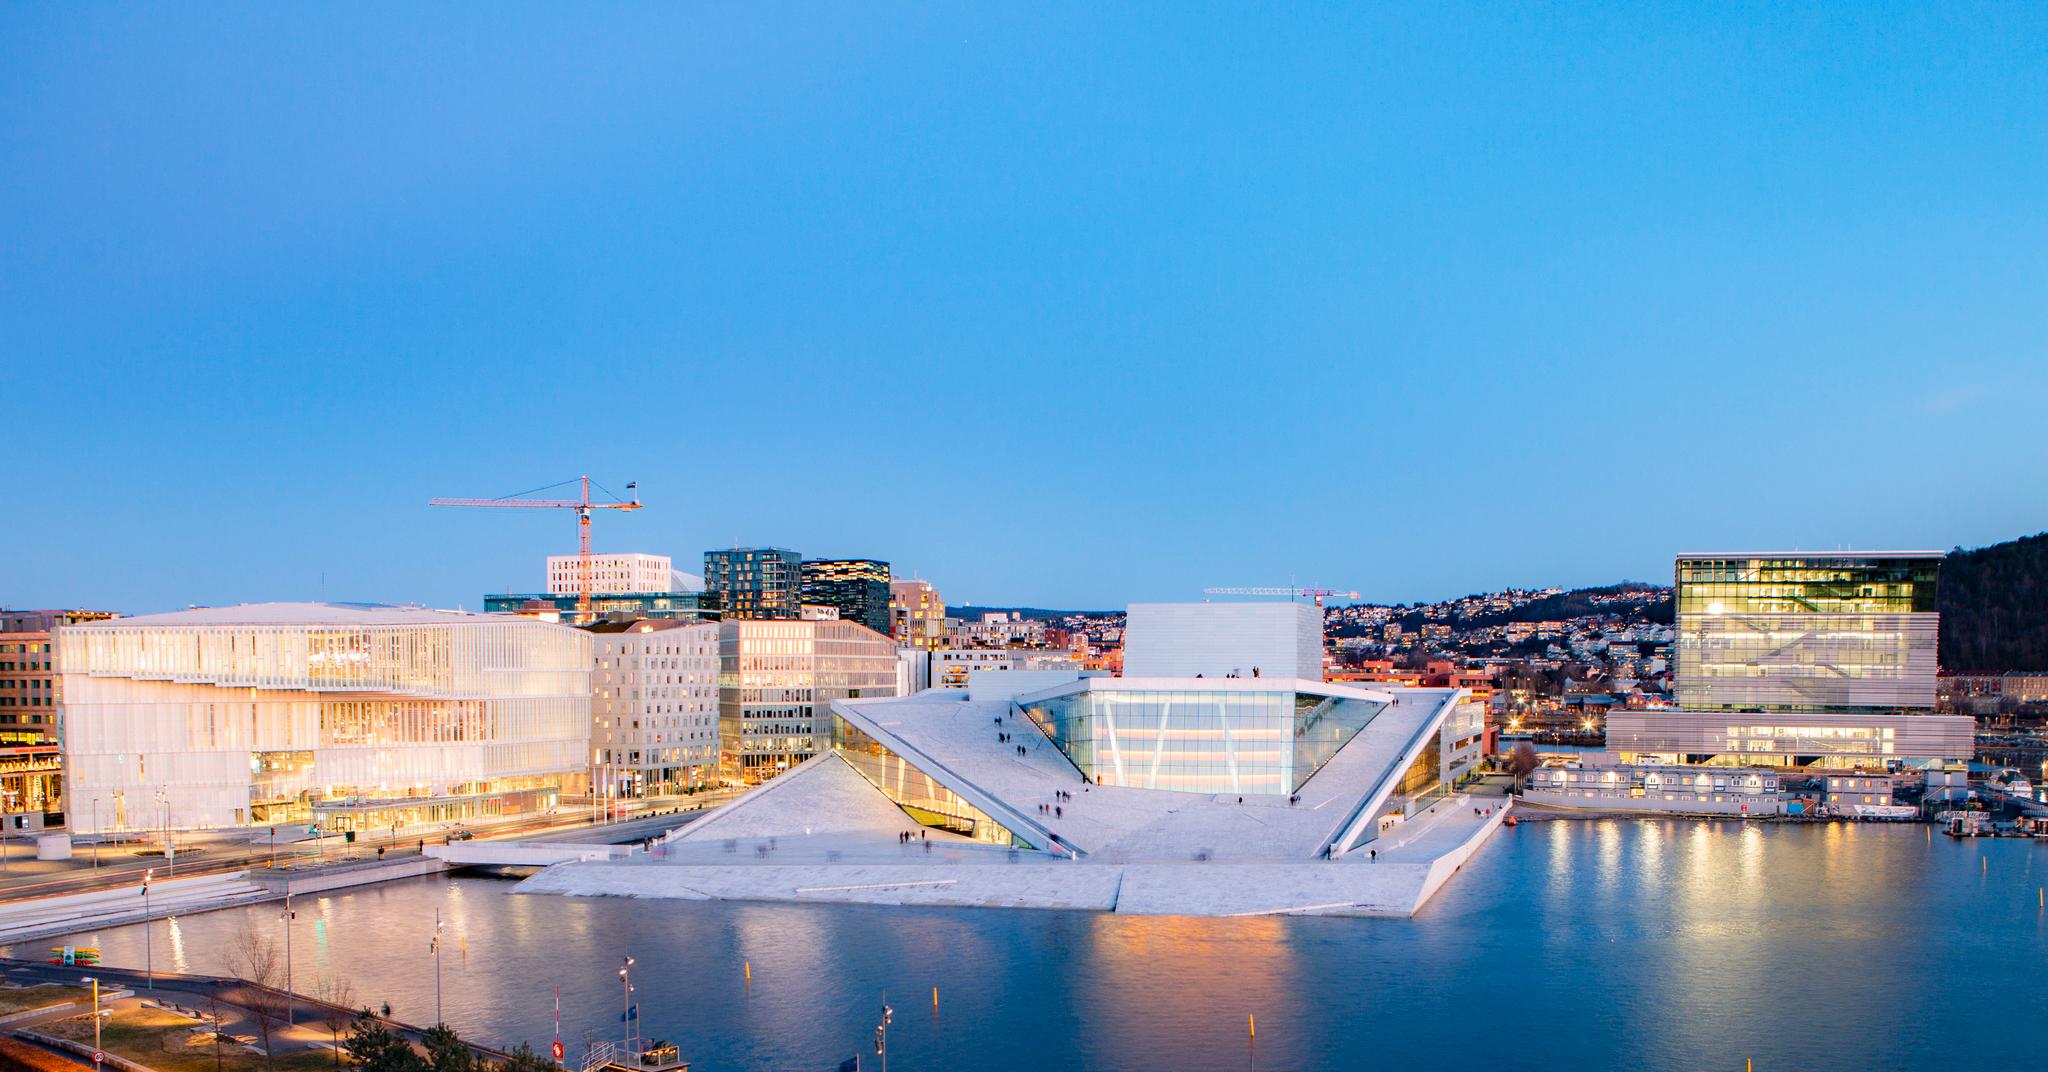 Oslo får start et stort idrettsarrangementet til byen: Waldner Cup. Spillestedet er ikke endelig bekreftet, men operahuset i Bjørvika har vært aktuelt.